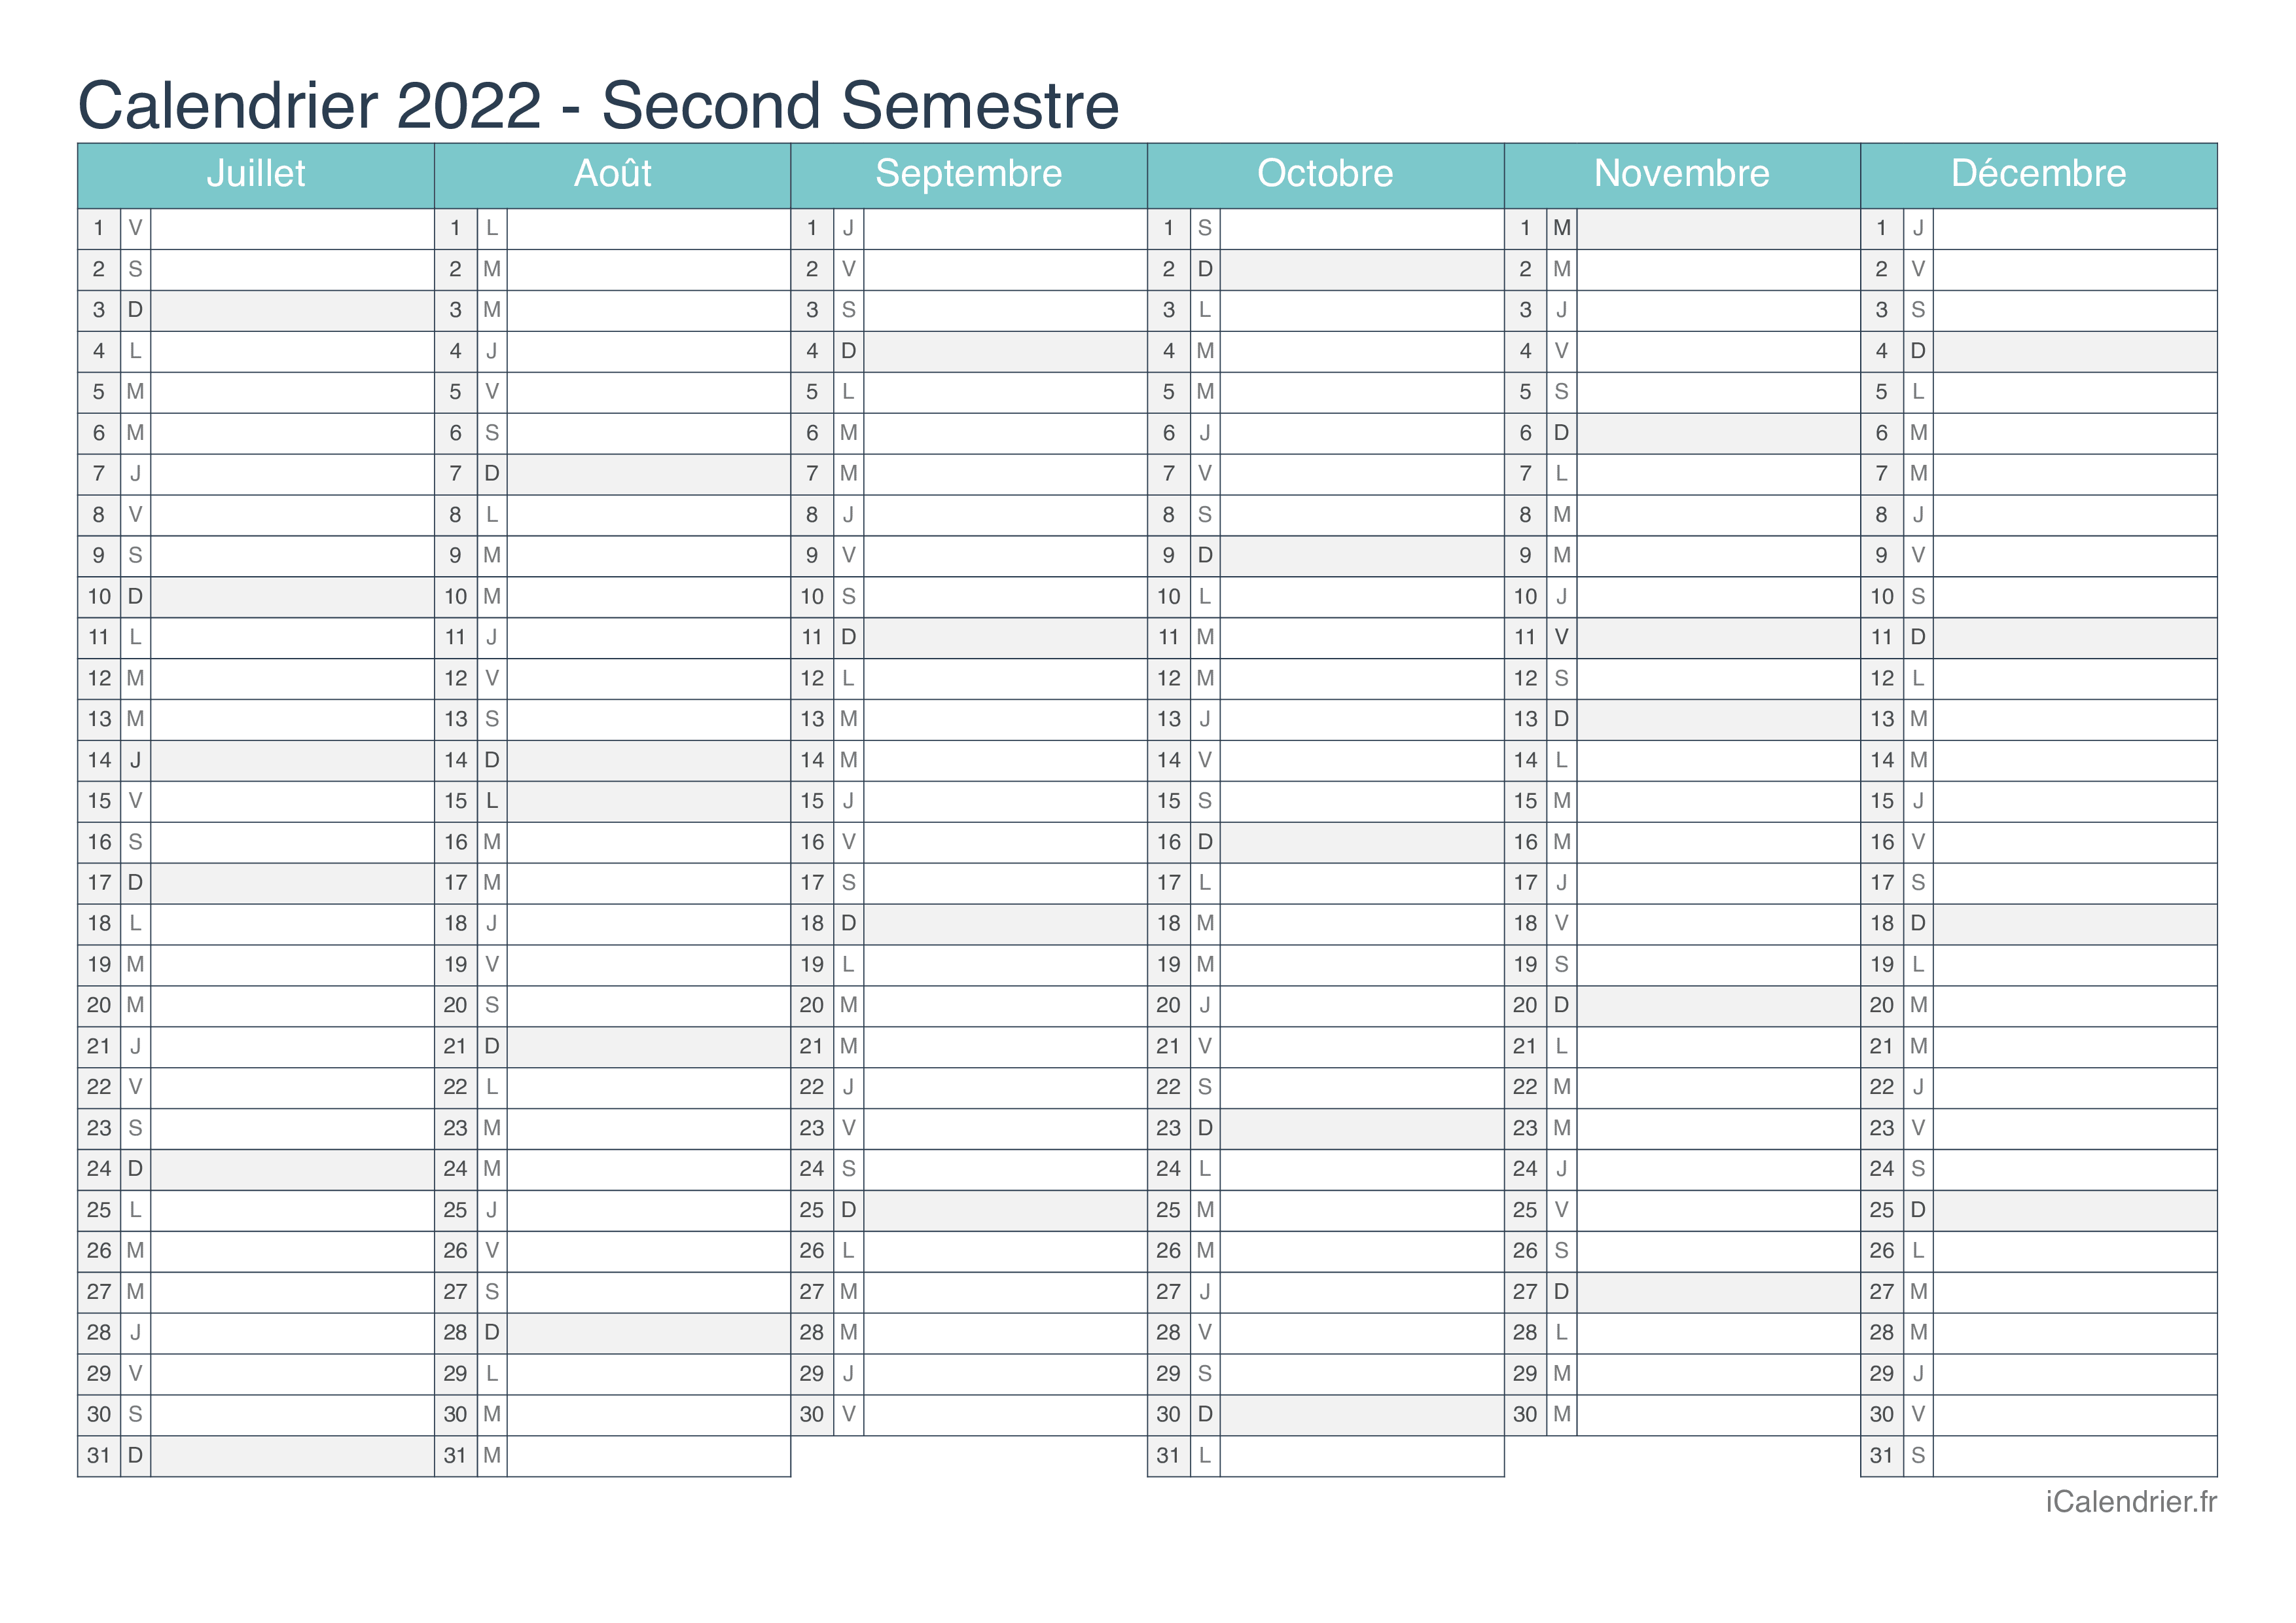 Calendrier Liturgique 2022 à Imprimer Calendrier 2022 à imprimer PDF et Excel   iCalendrier